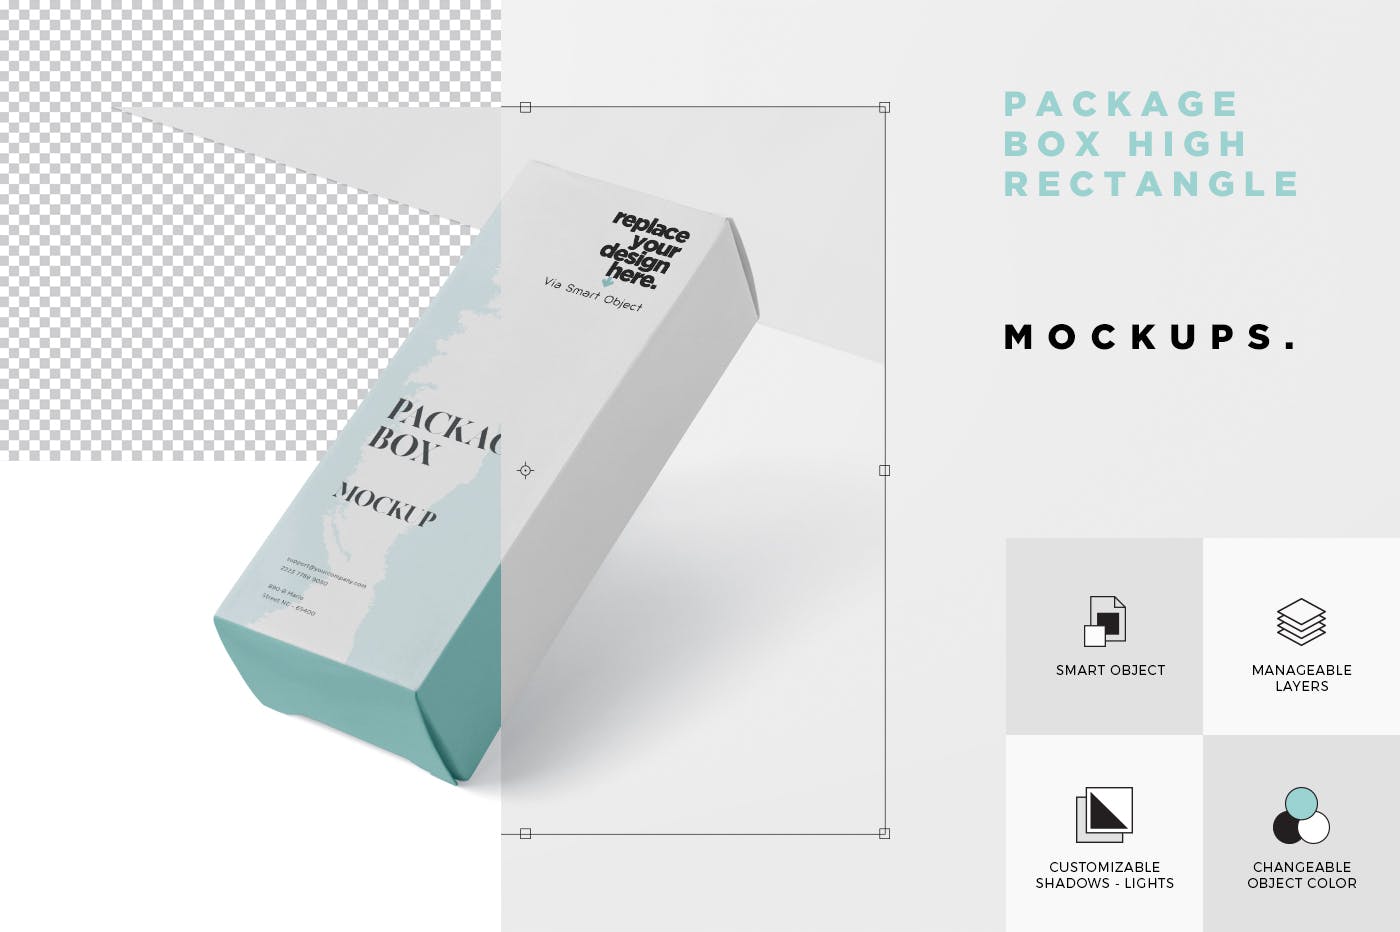 简约风多用途产品包装纸盒设计效果图16设计网精选 Package Box Mock-Up – High Rectangle Shape插图(5)